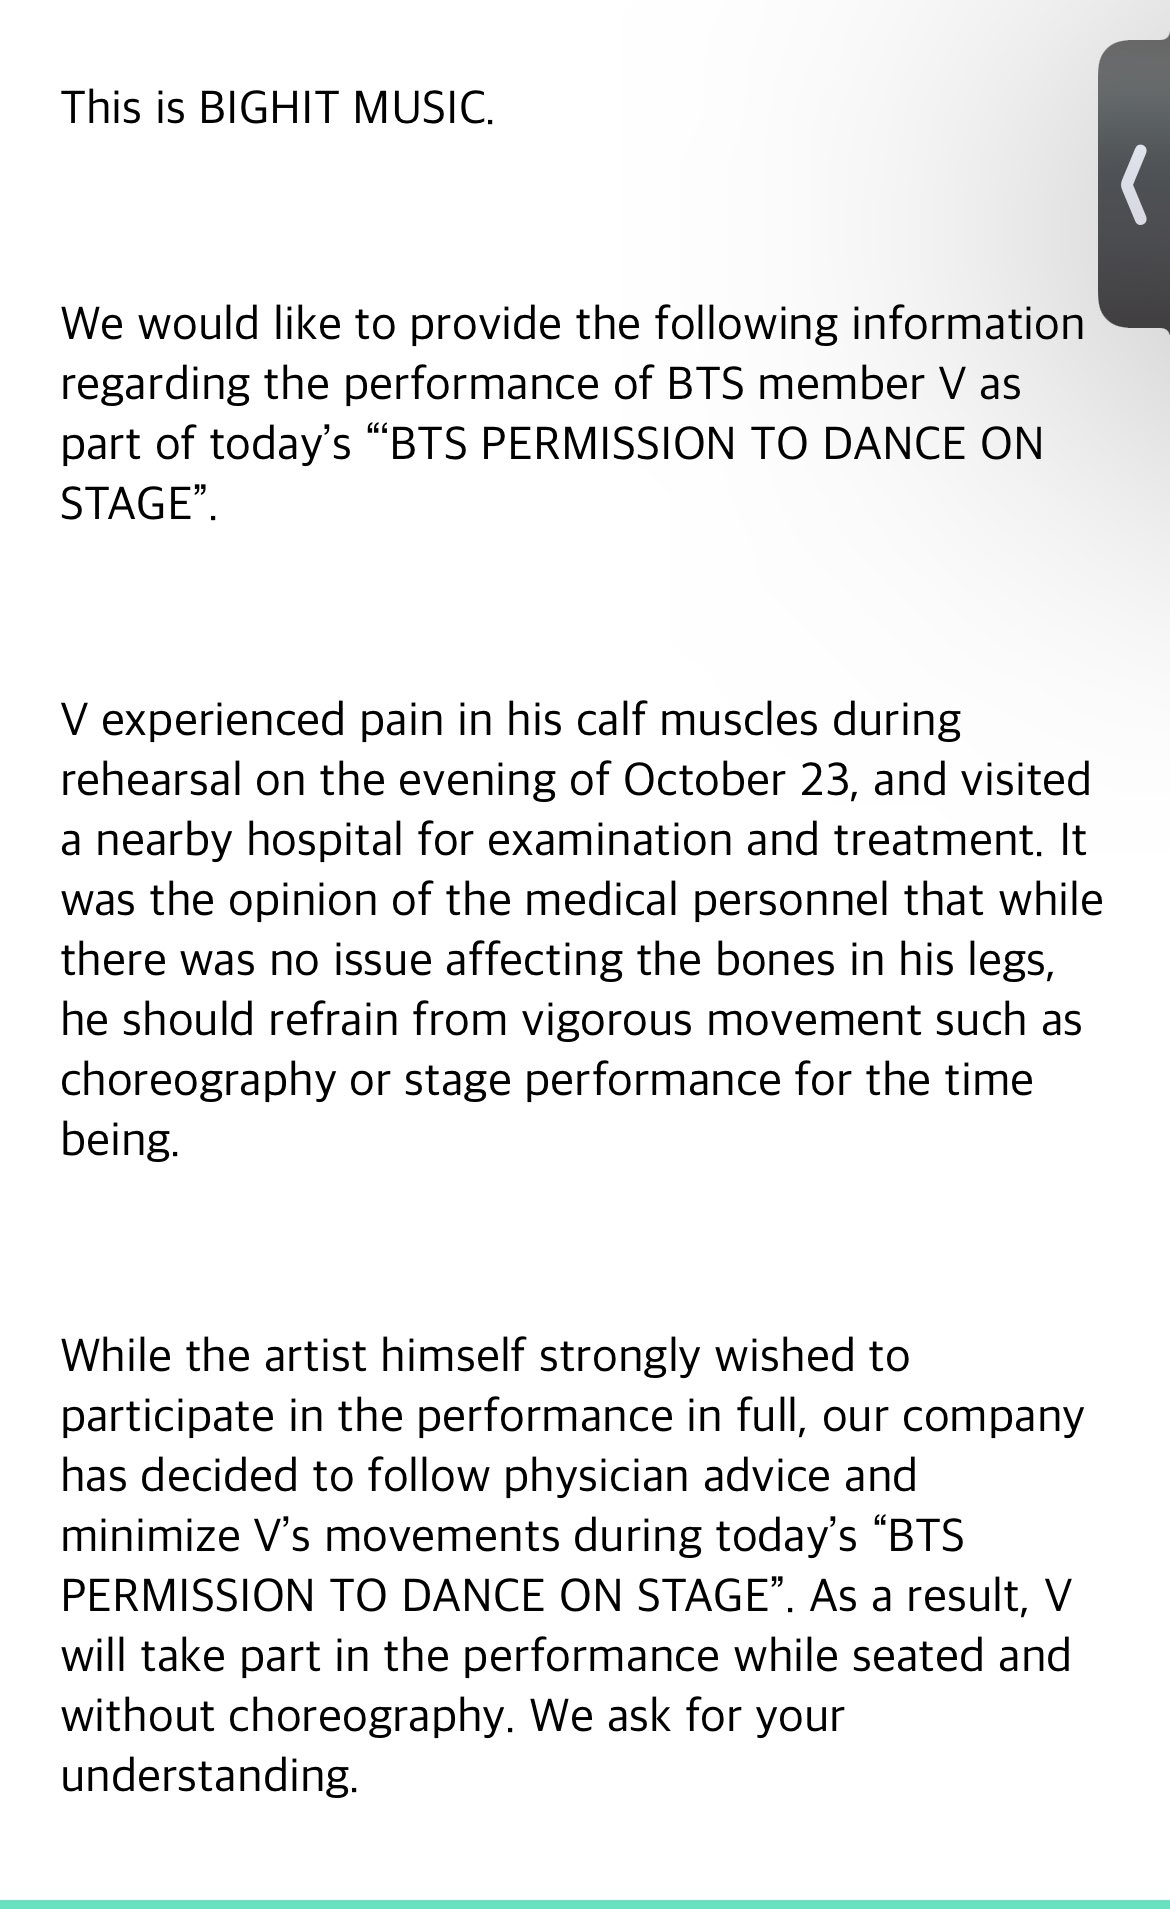 V (BTS) bị chấn thương, không thể nhảy tại concert chiều nay 24/10 - Ảnh 3